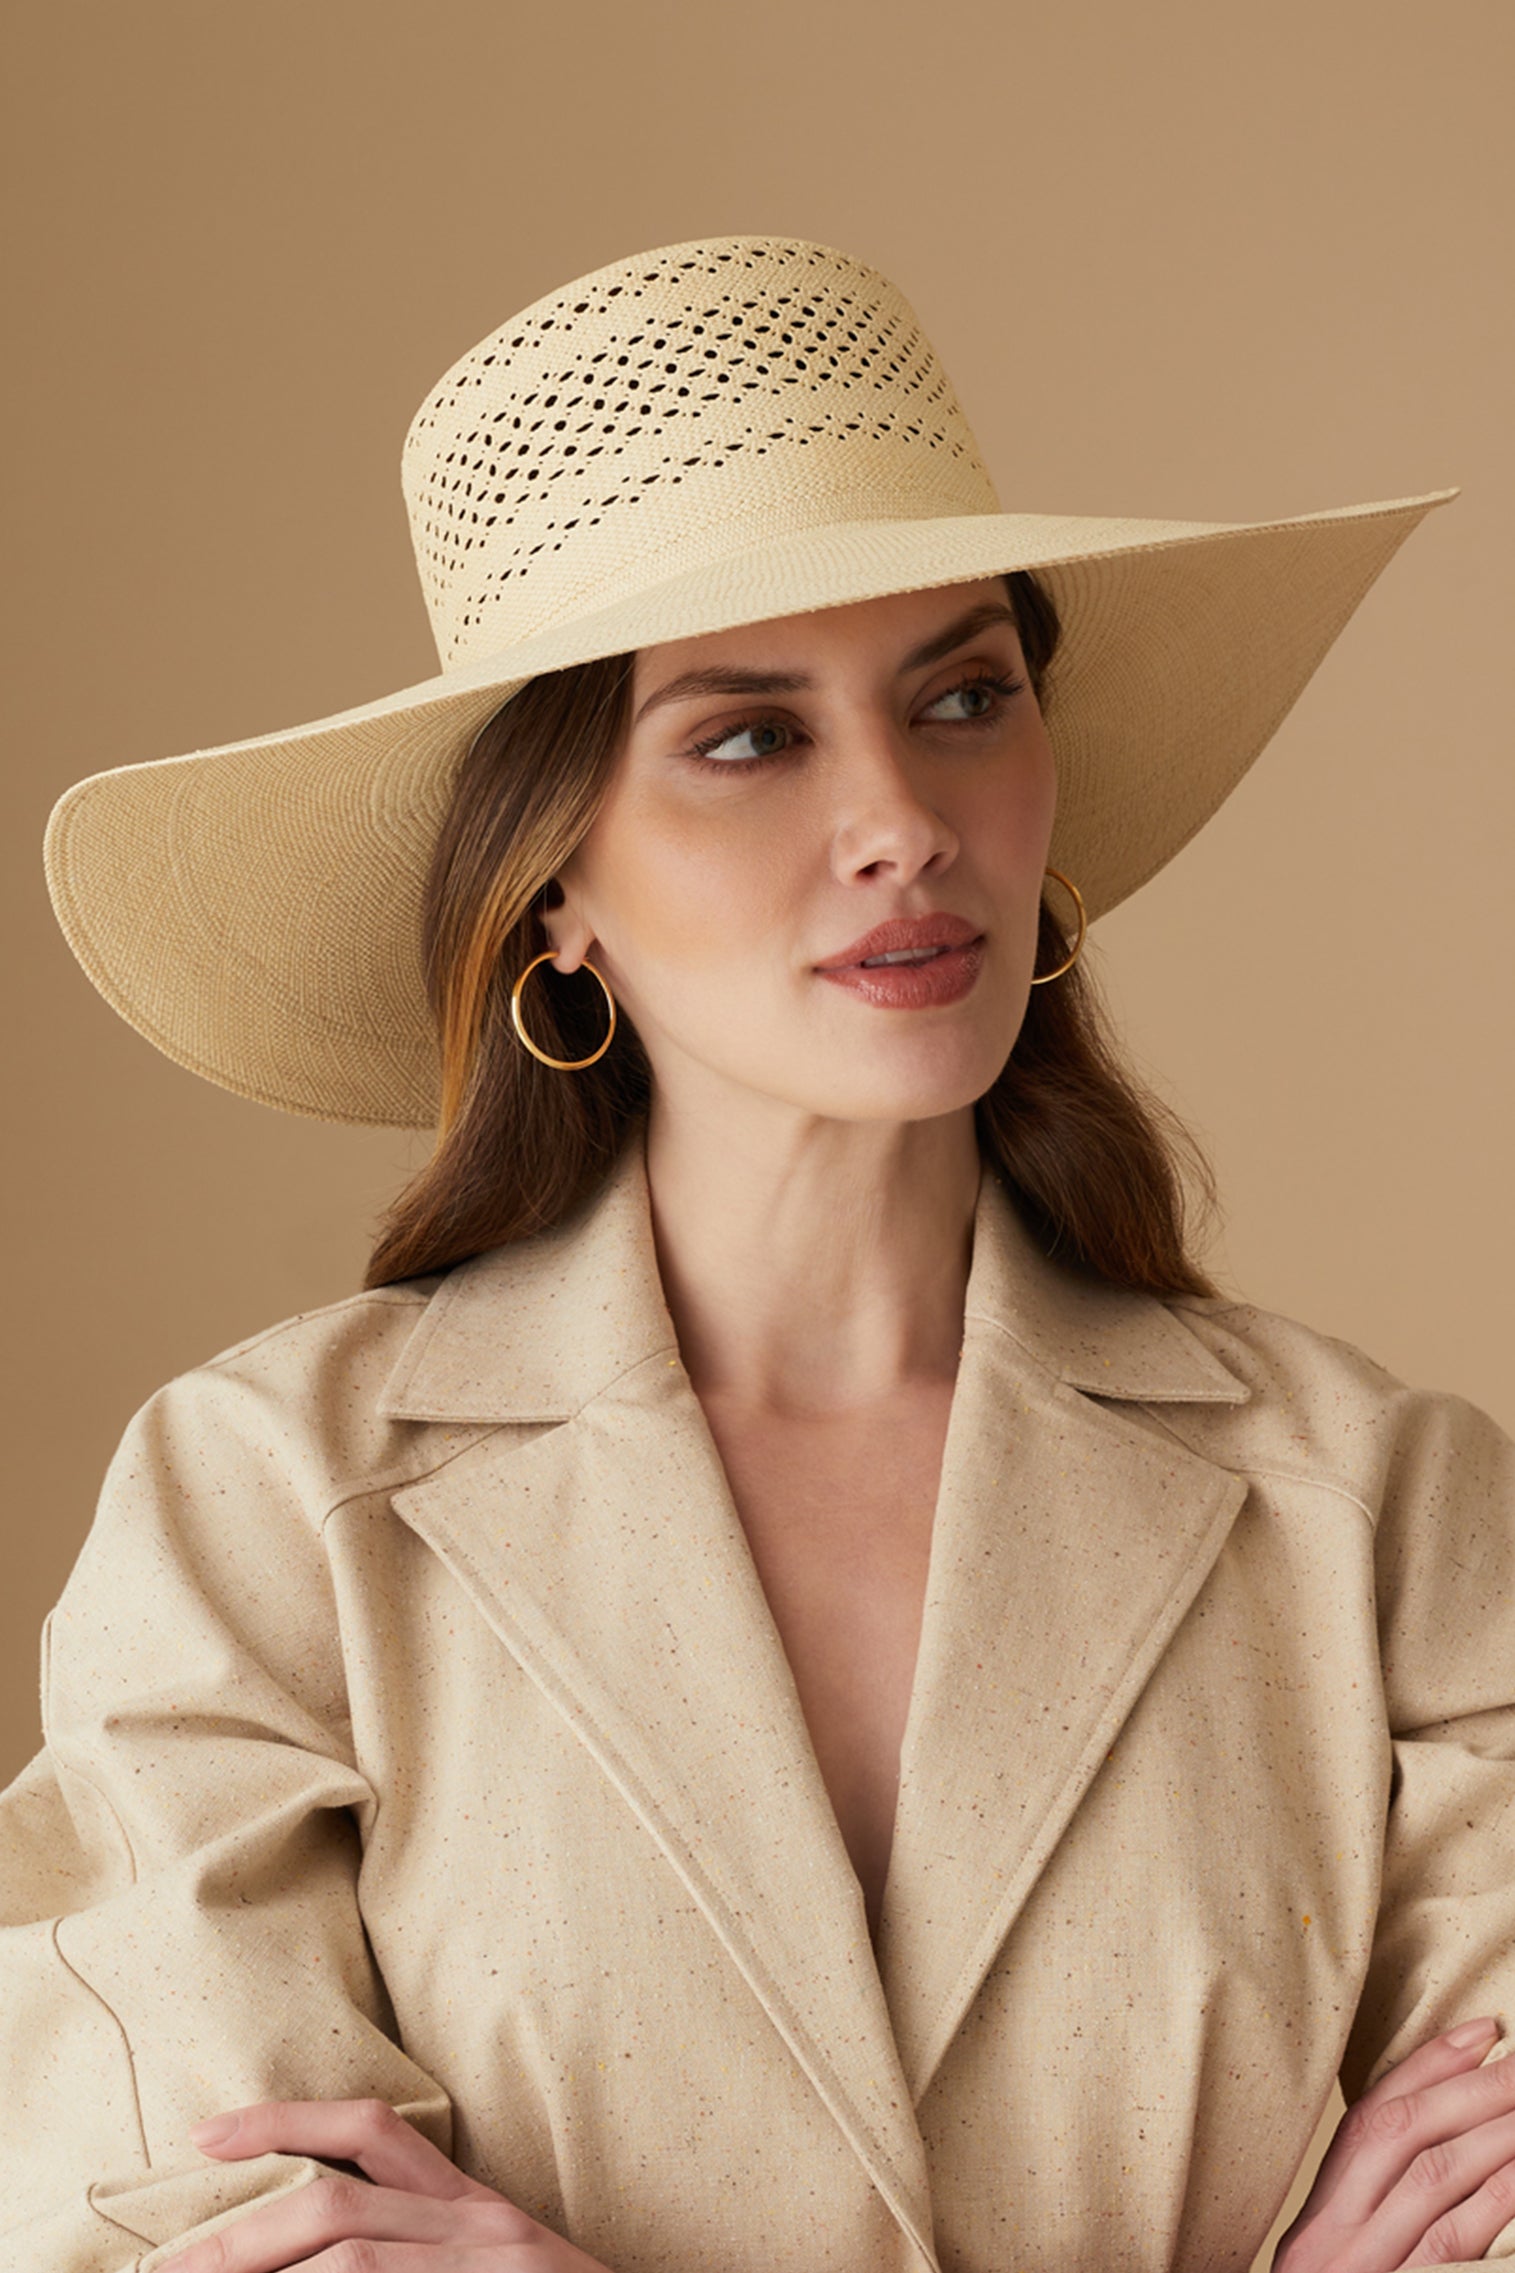 Banbury Open Weave Sun Hat - Panamas & Sun Hats for Women - Lock & Co. Hatters London UK